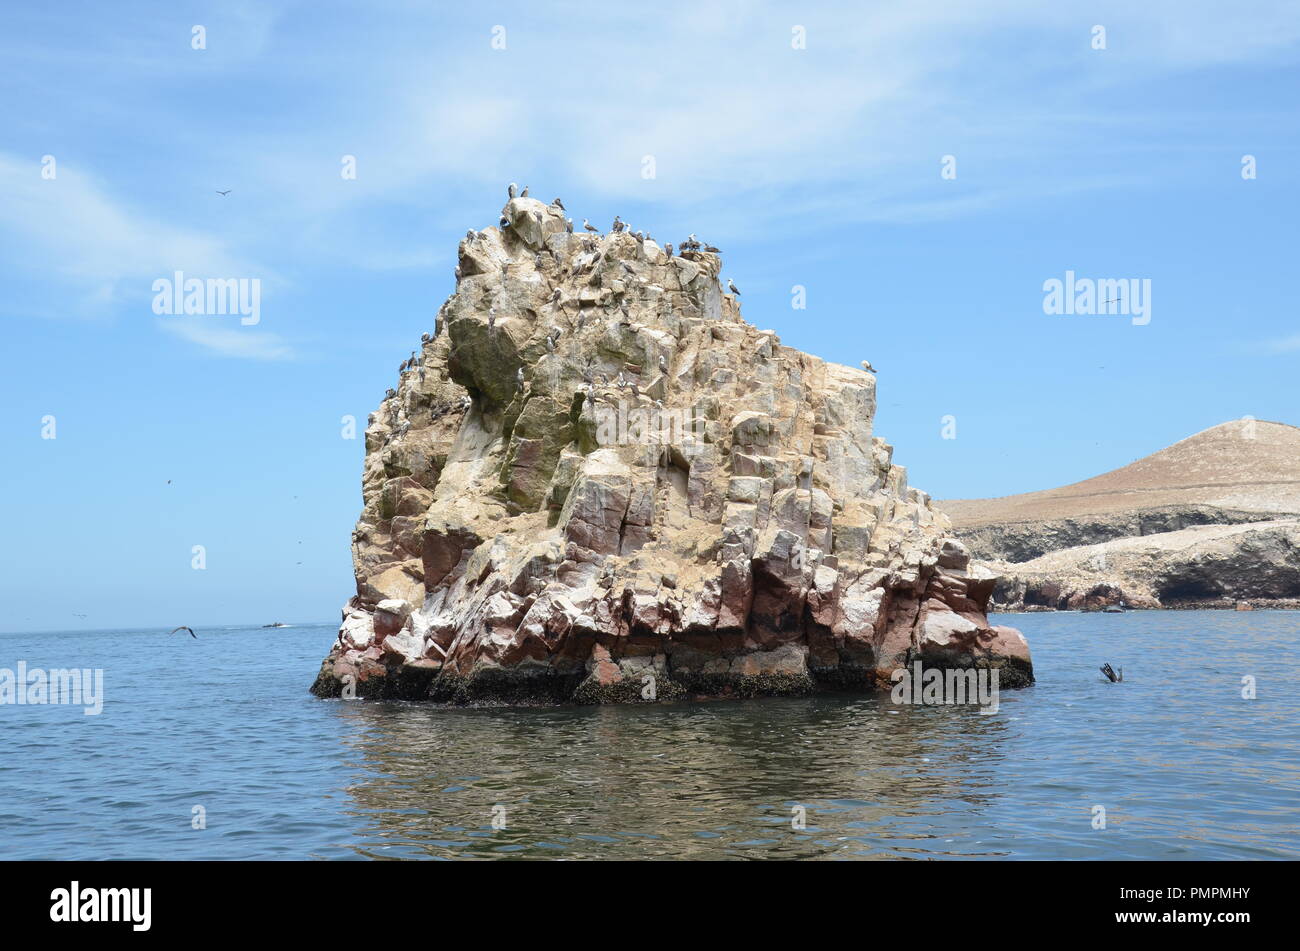 Las aves silvestres en la pequeña isla rocosa que es uno de las Islas Ballestas en el Océano Pacífico, cerca de la ciudad de Paracas en Perú. Foto de stock